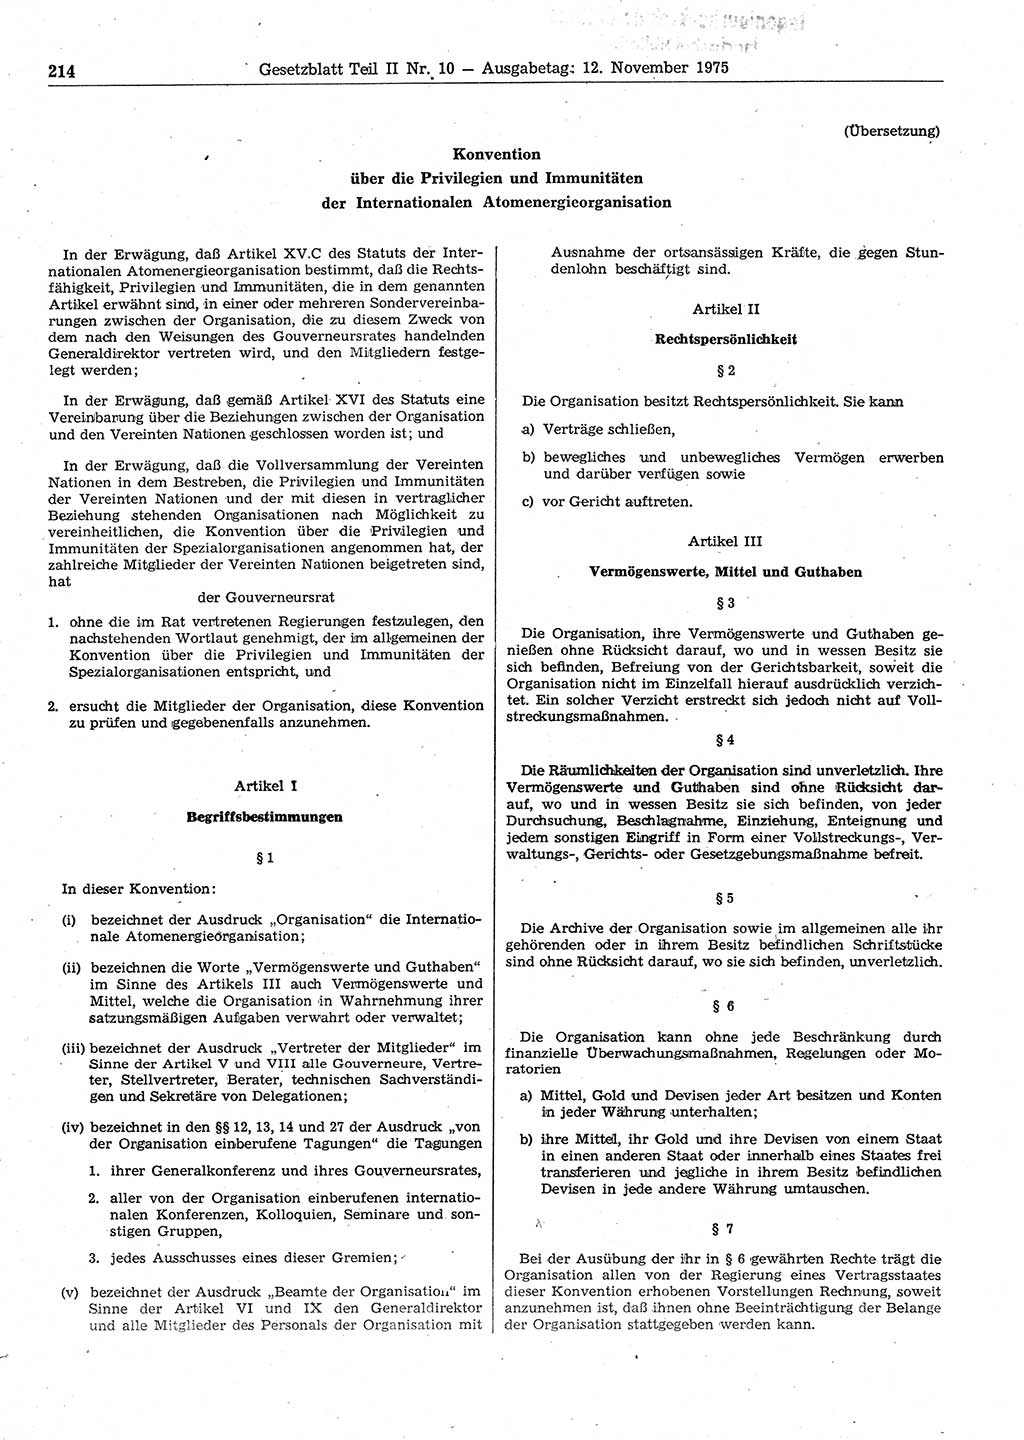 Gesetzblatt (GBl.) der Deutschen Demokratischen Republik (DDR) Teil ⅠⅠ 1975, Seite 214 (GBl. DDR ⅠⅠ 1975, S. 214)